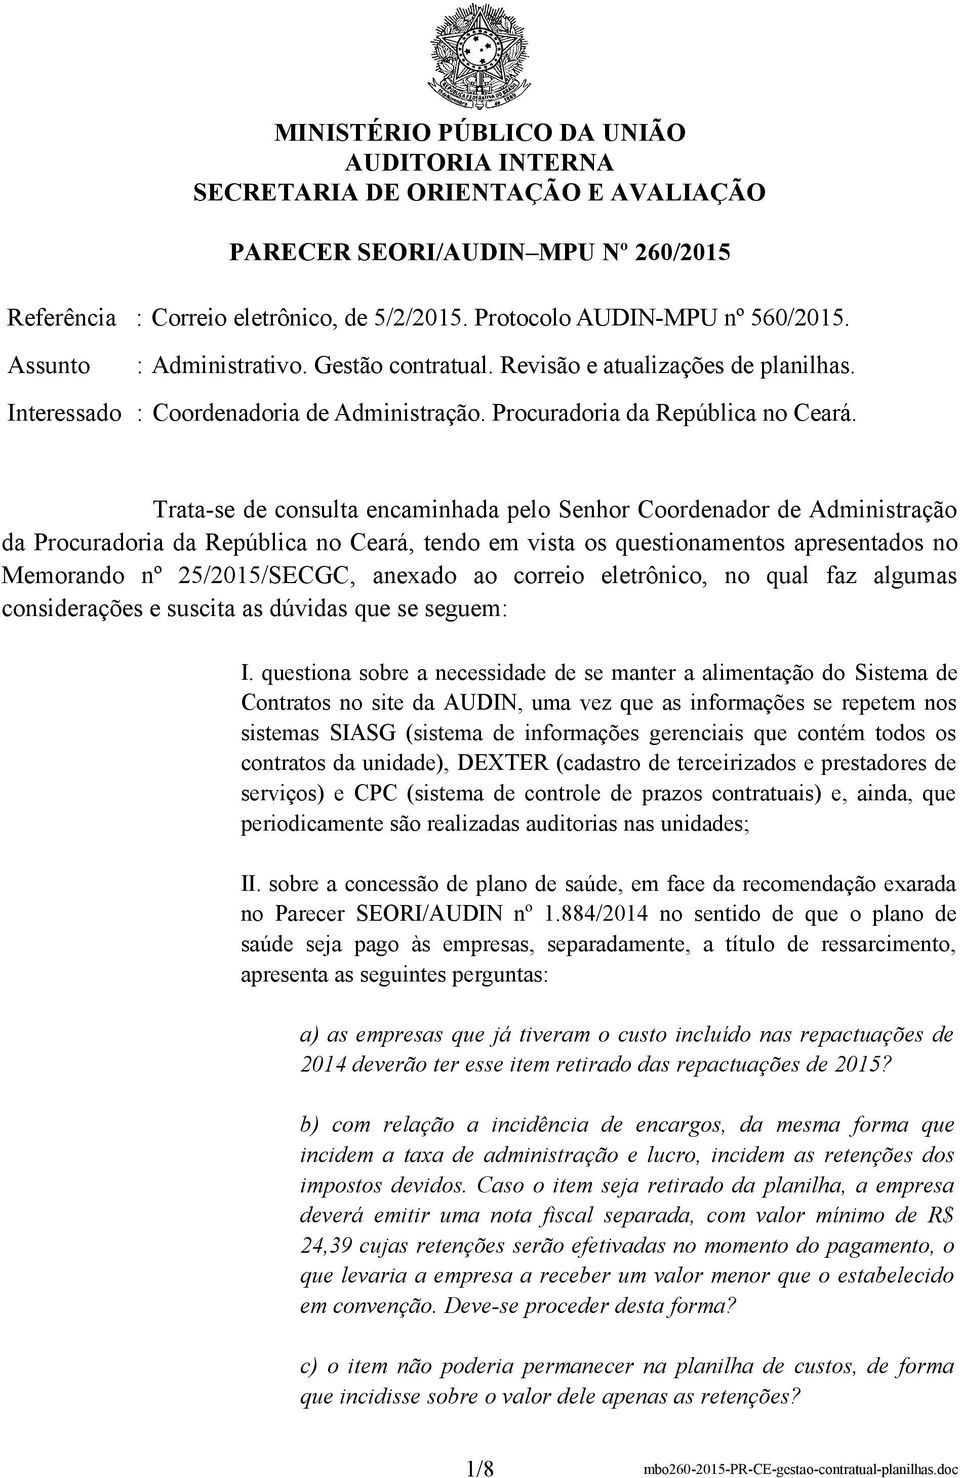 Trata-se de consulta encaminhada pelo Senhor Coordenador de Administração da Procuradoria da República no Ceará, tendo em vista os questionamentos apresentados no Memorando nº 25/2015/SECGC, anexado